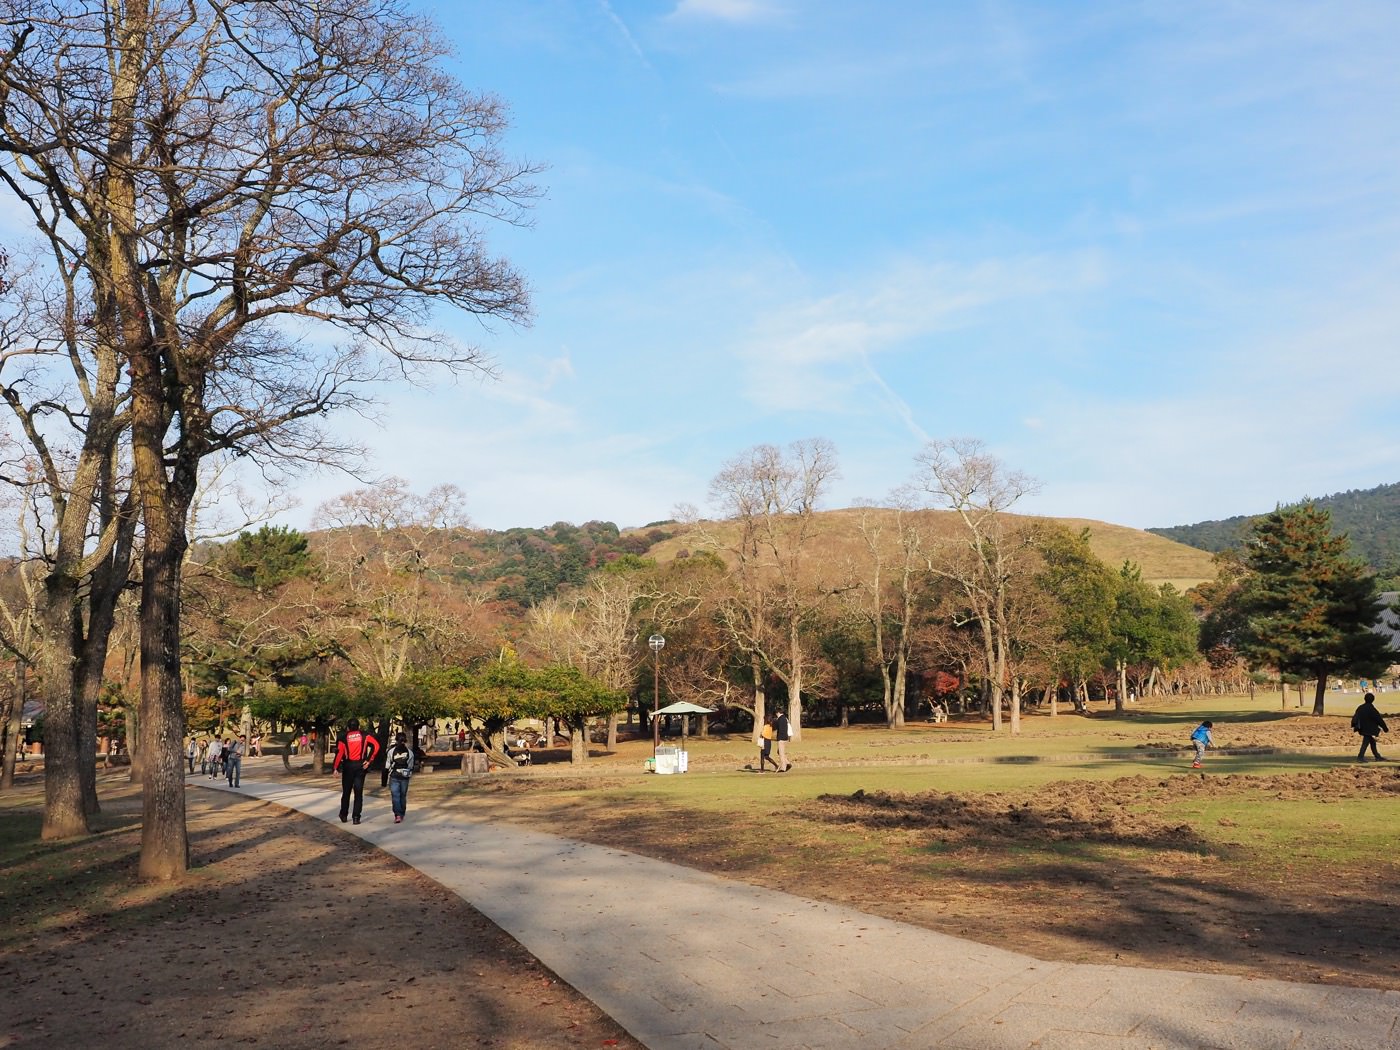 奈良景點 賞楓景點推薦 東大寺世界文化遺產、奈良公園紅葉與鹿 - 一口冒險 Bitesized Adventure